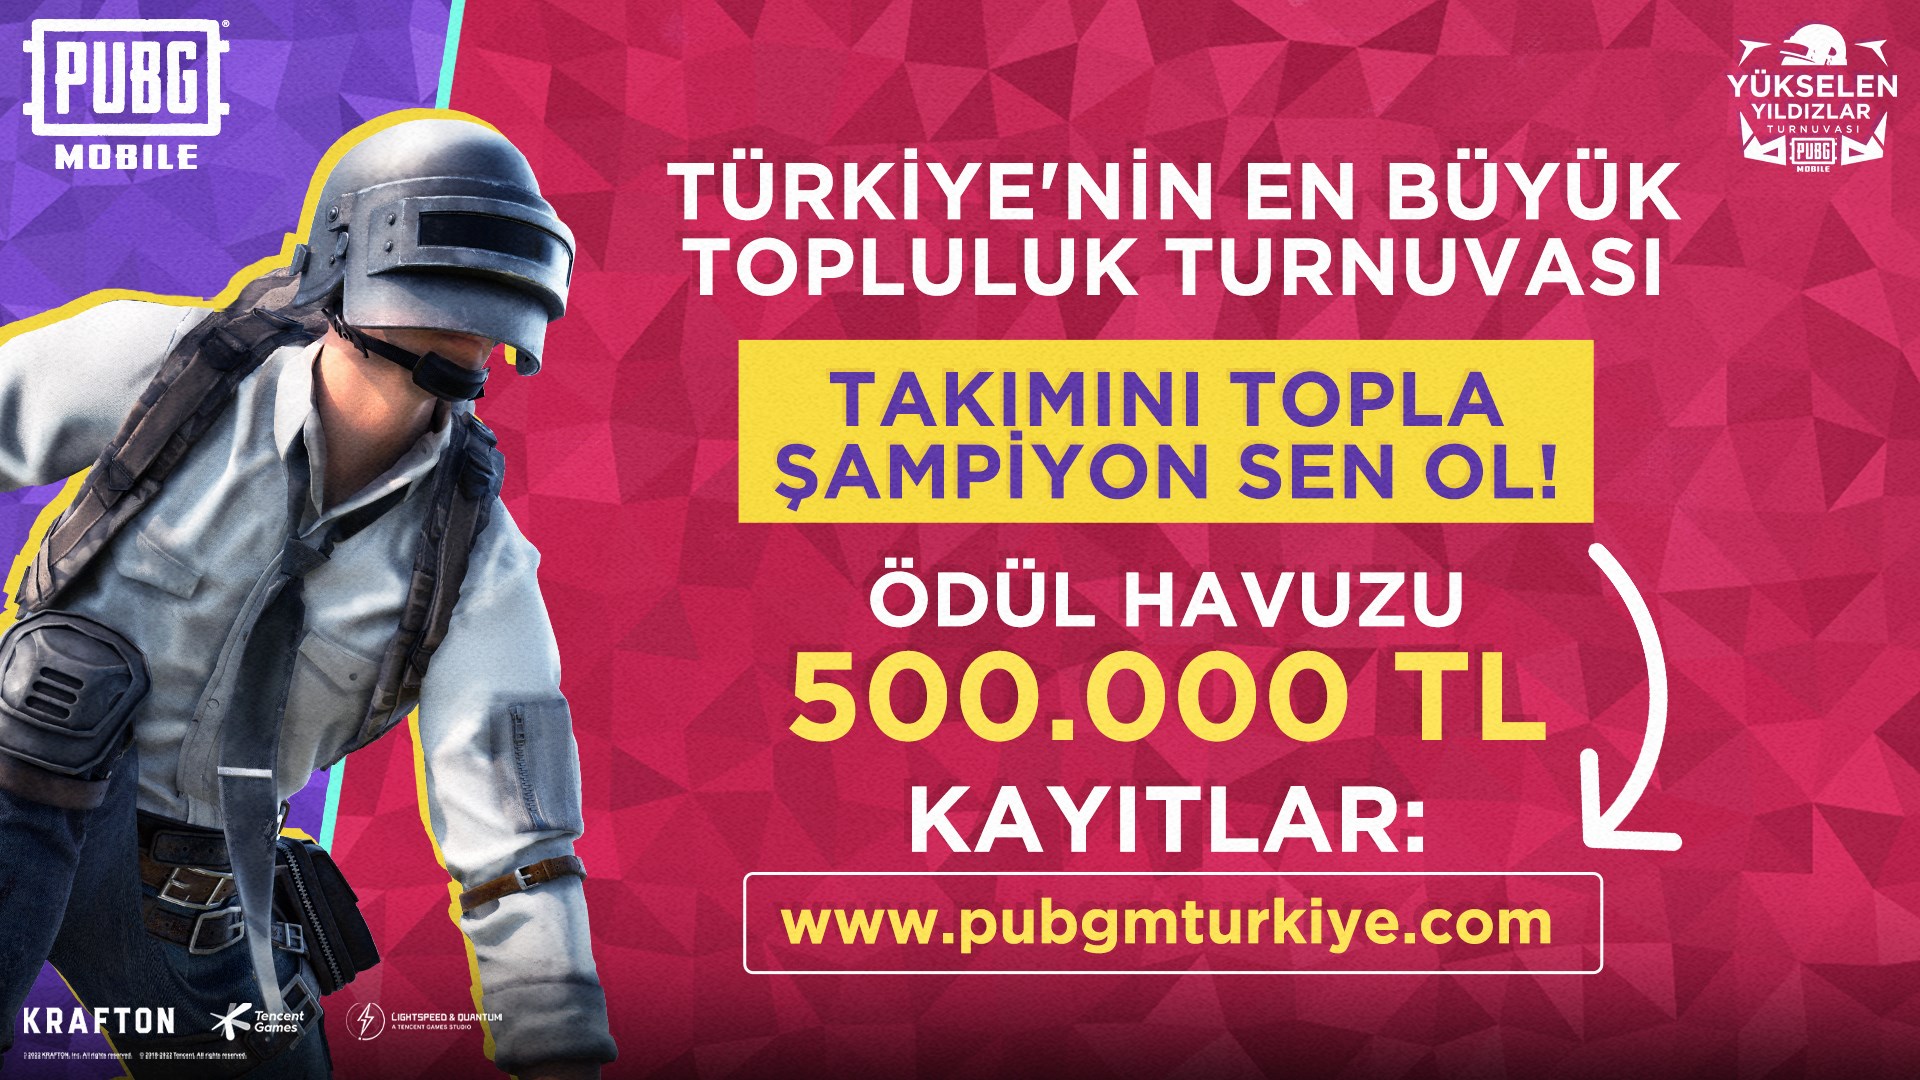 PUBG MOBILE'den Türkiye’nin en büyük topluluk turnuvası geliyor